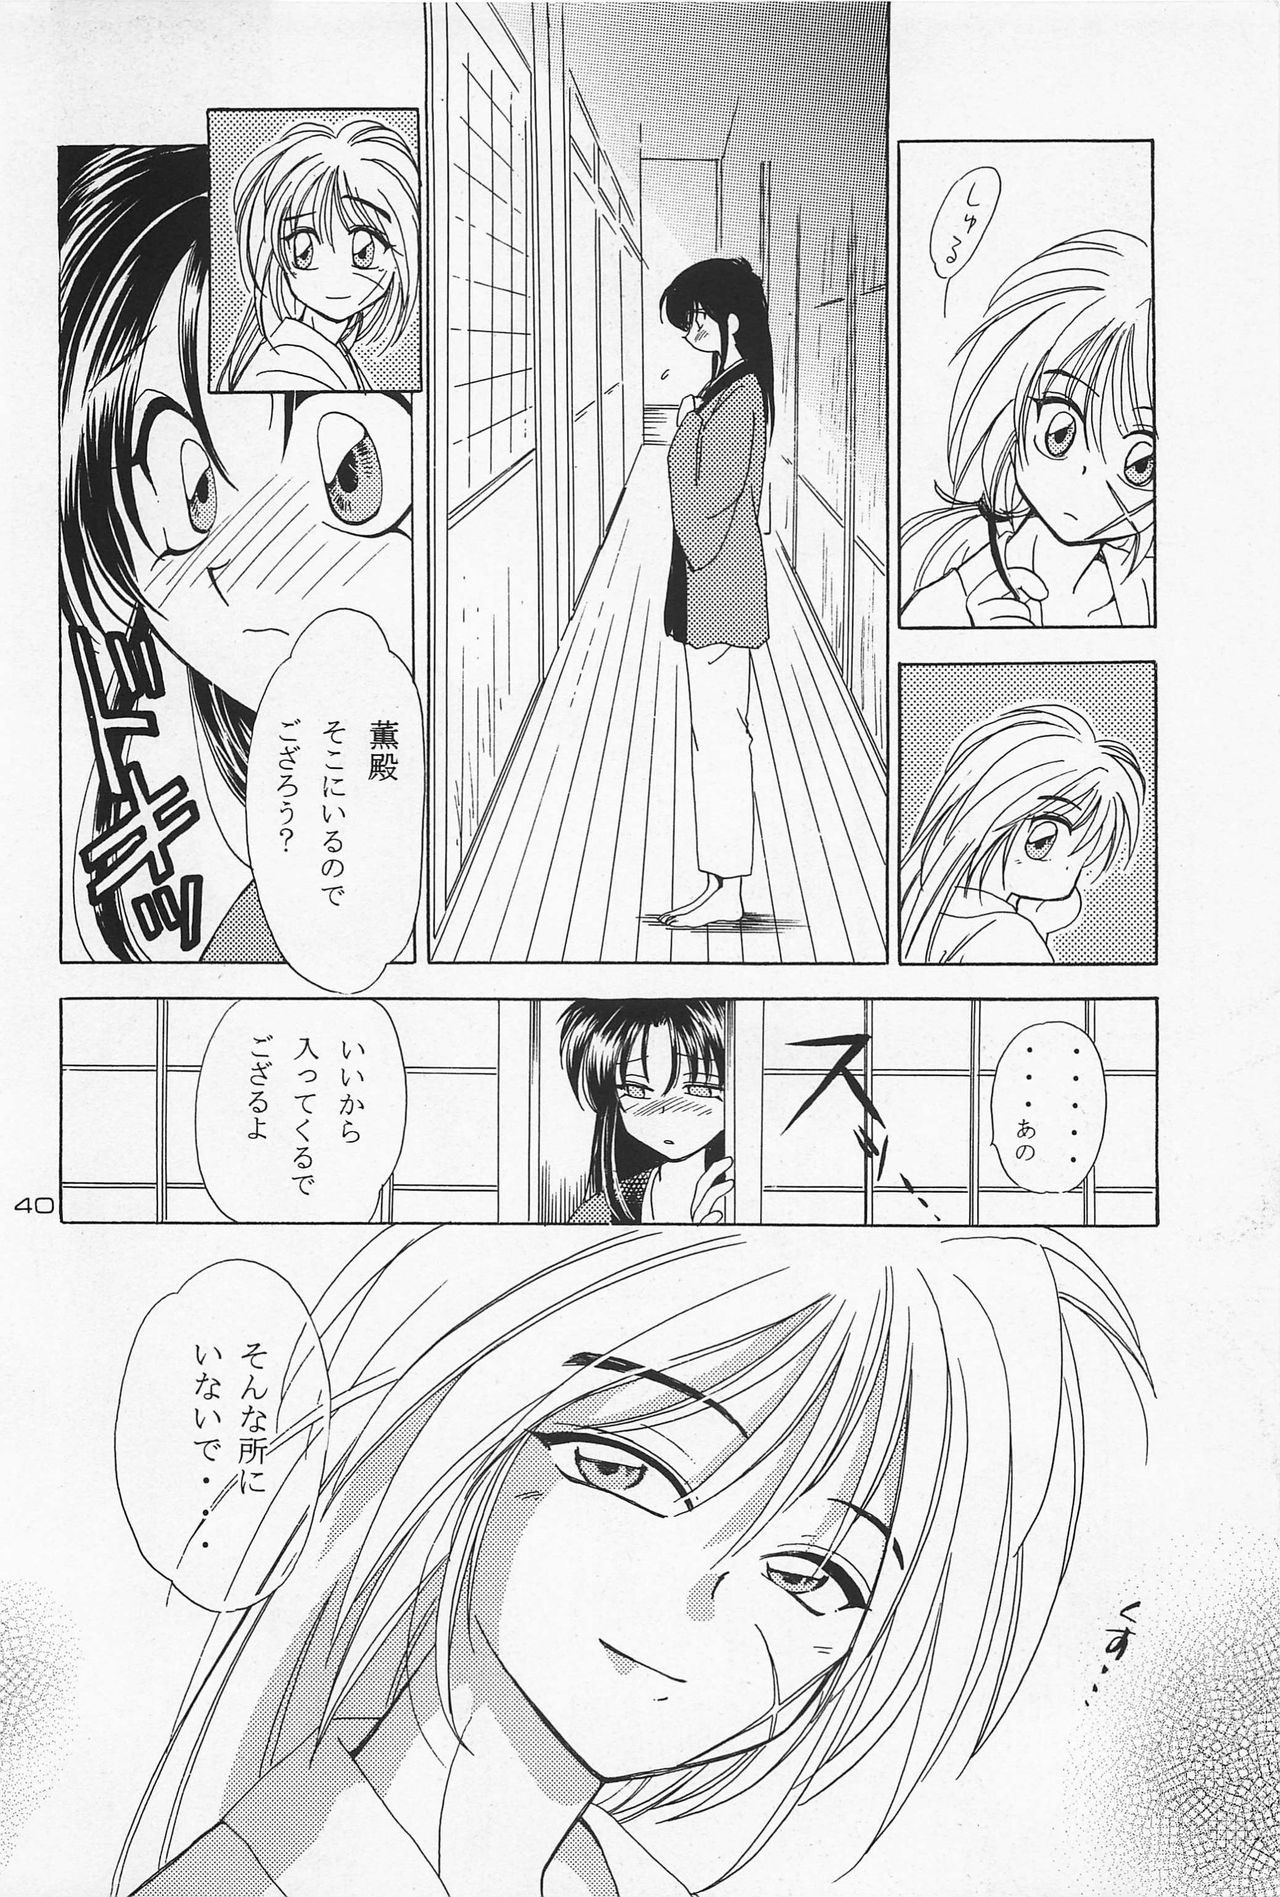 Battou hentai manga picture 24